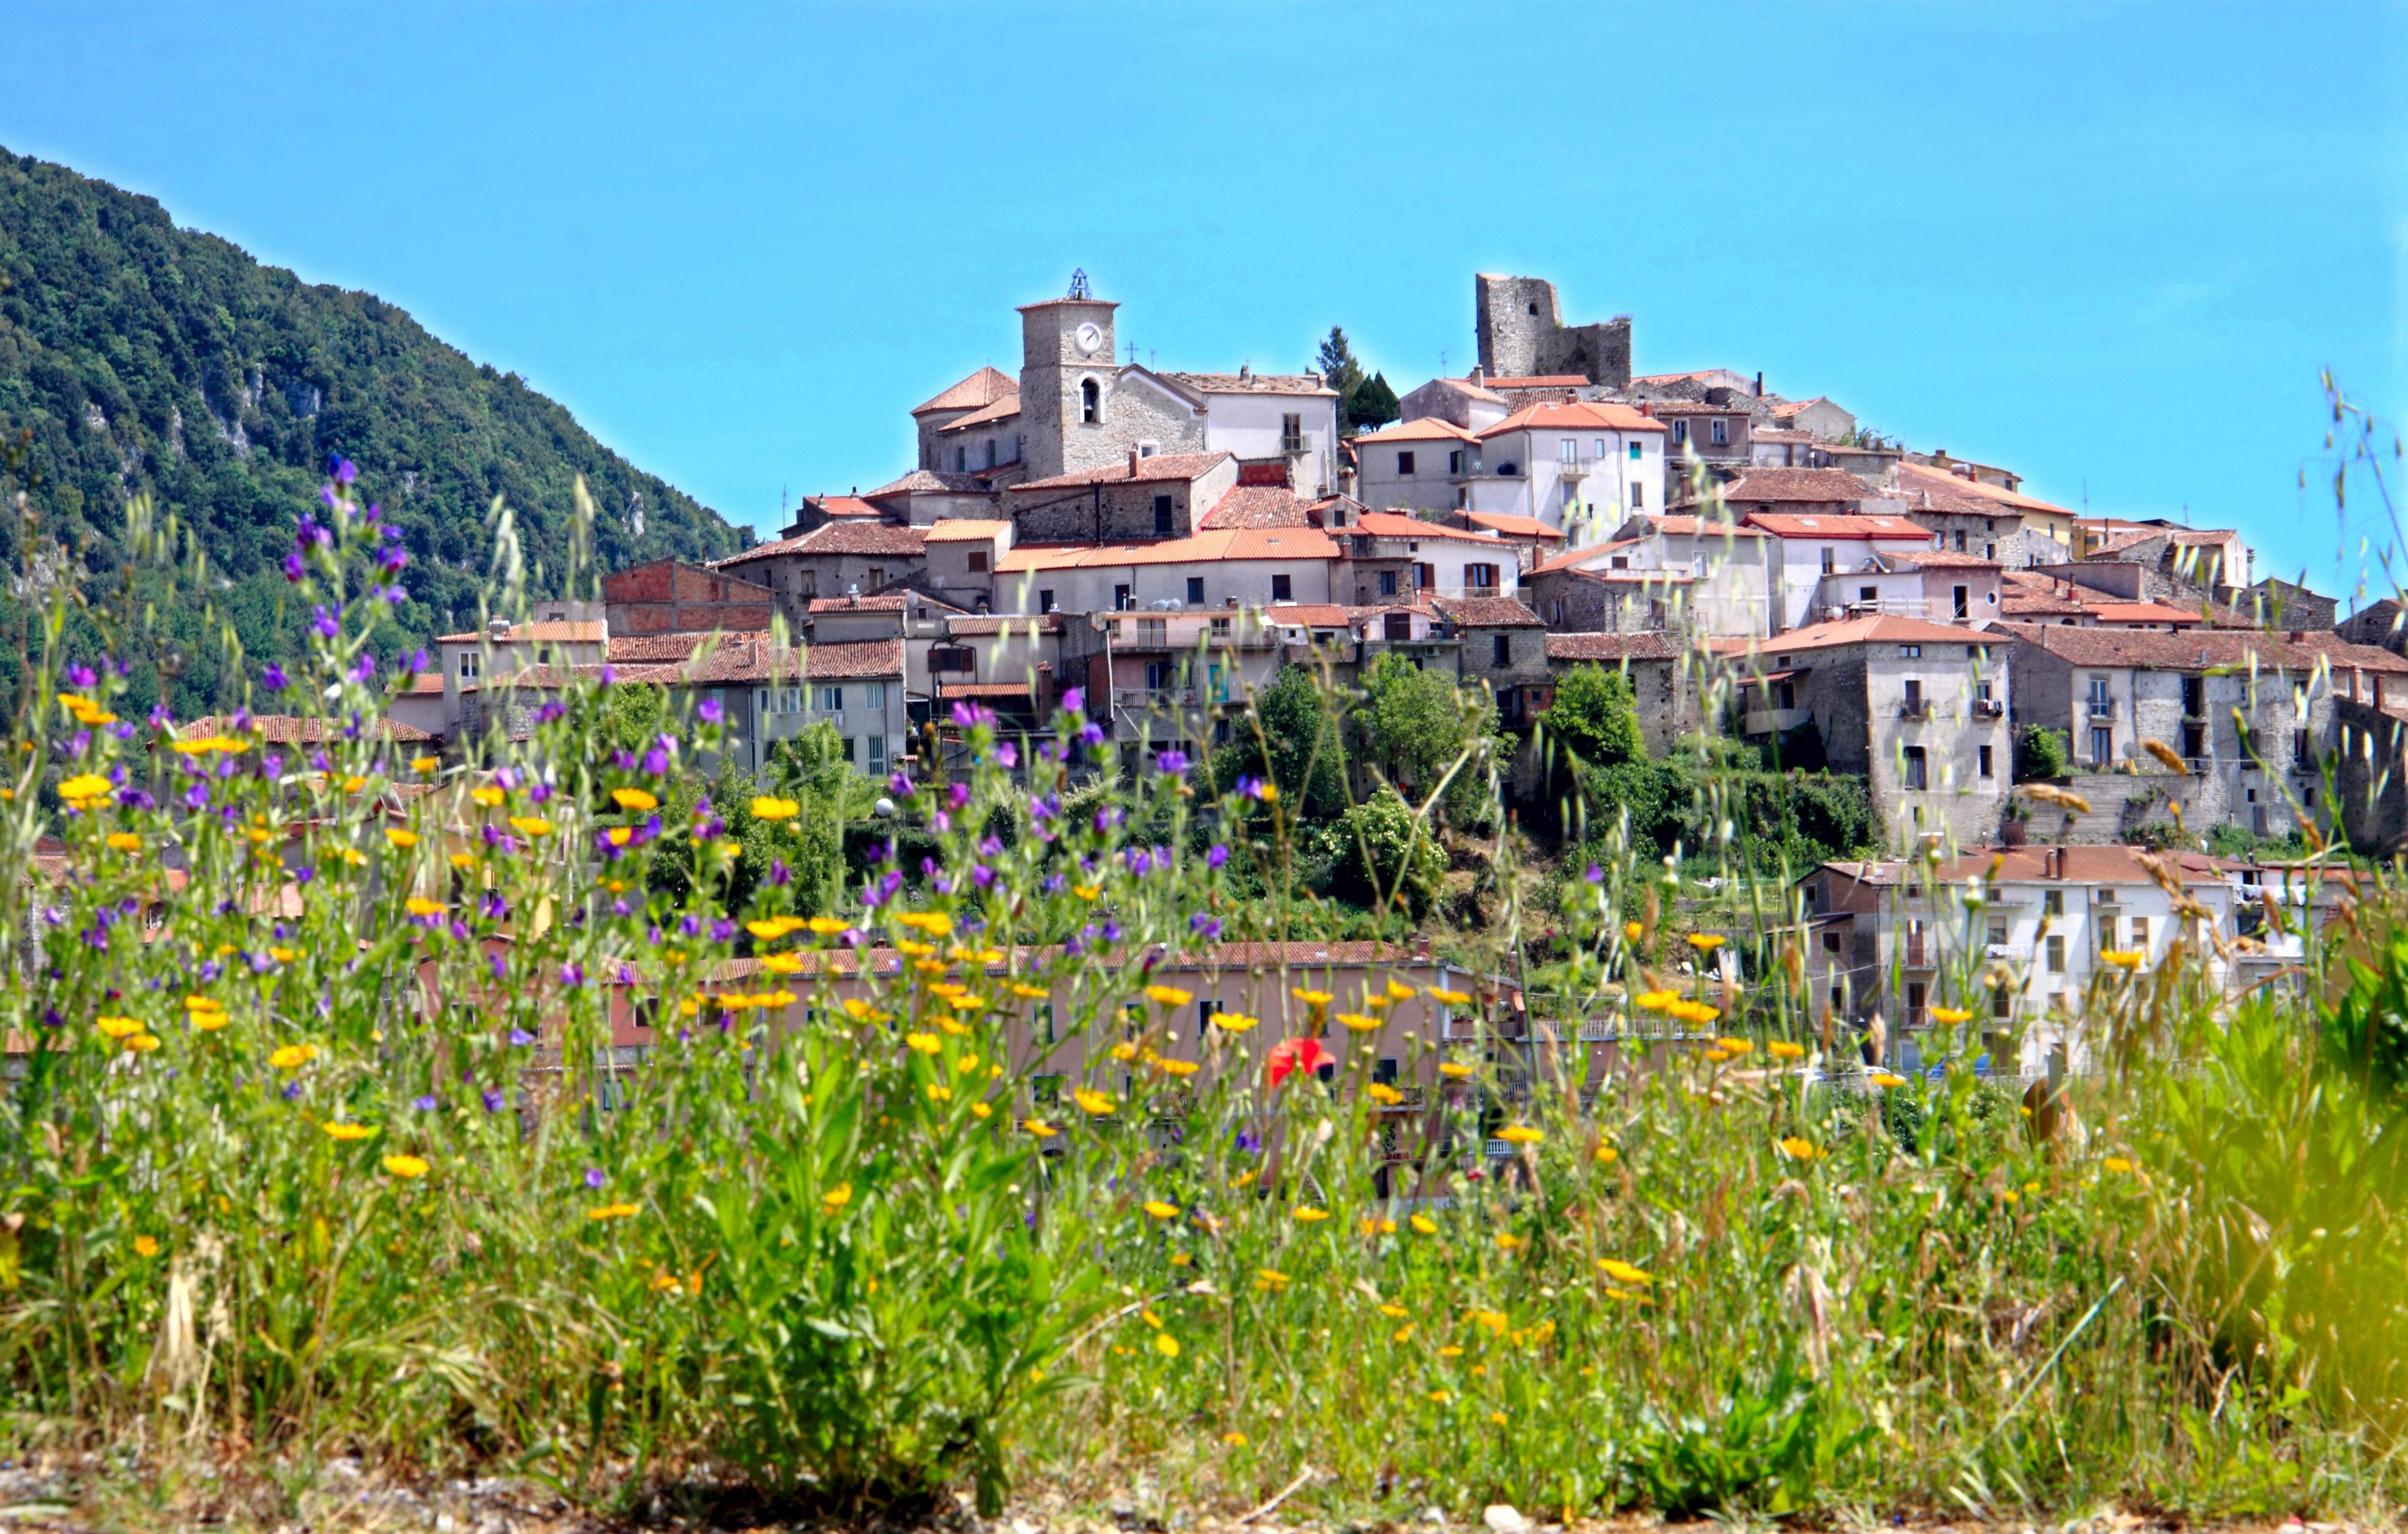 Caselle in Pittari in Italy